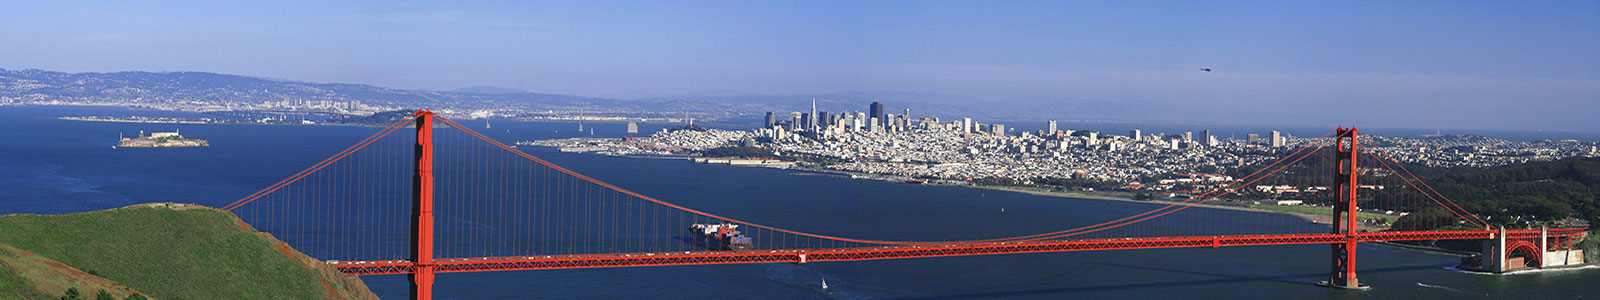 №1223 - Мост Голден Гейт в Сан-Франциско